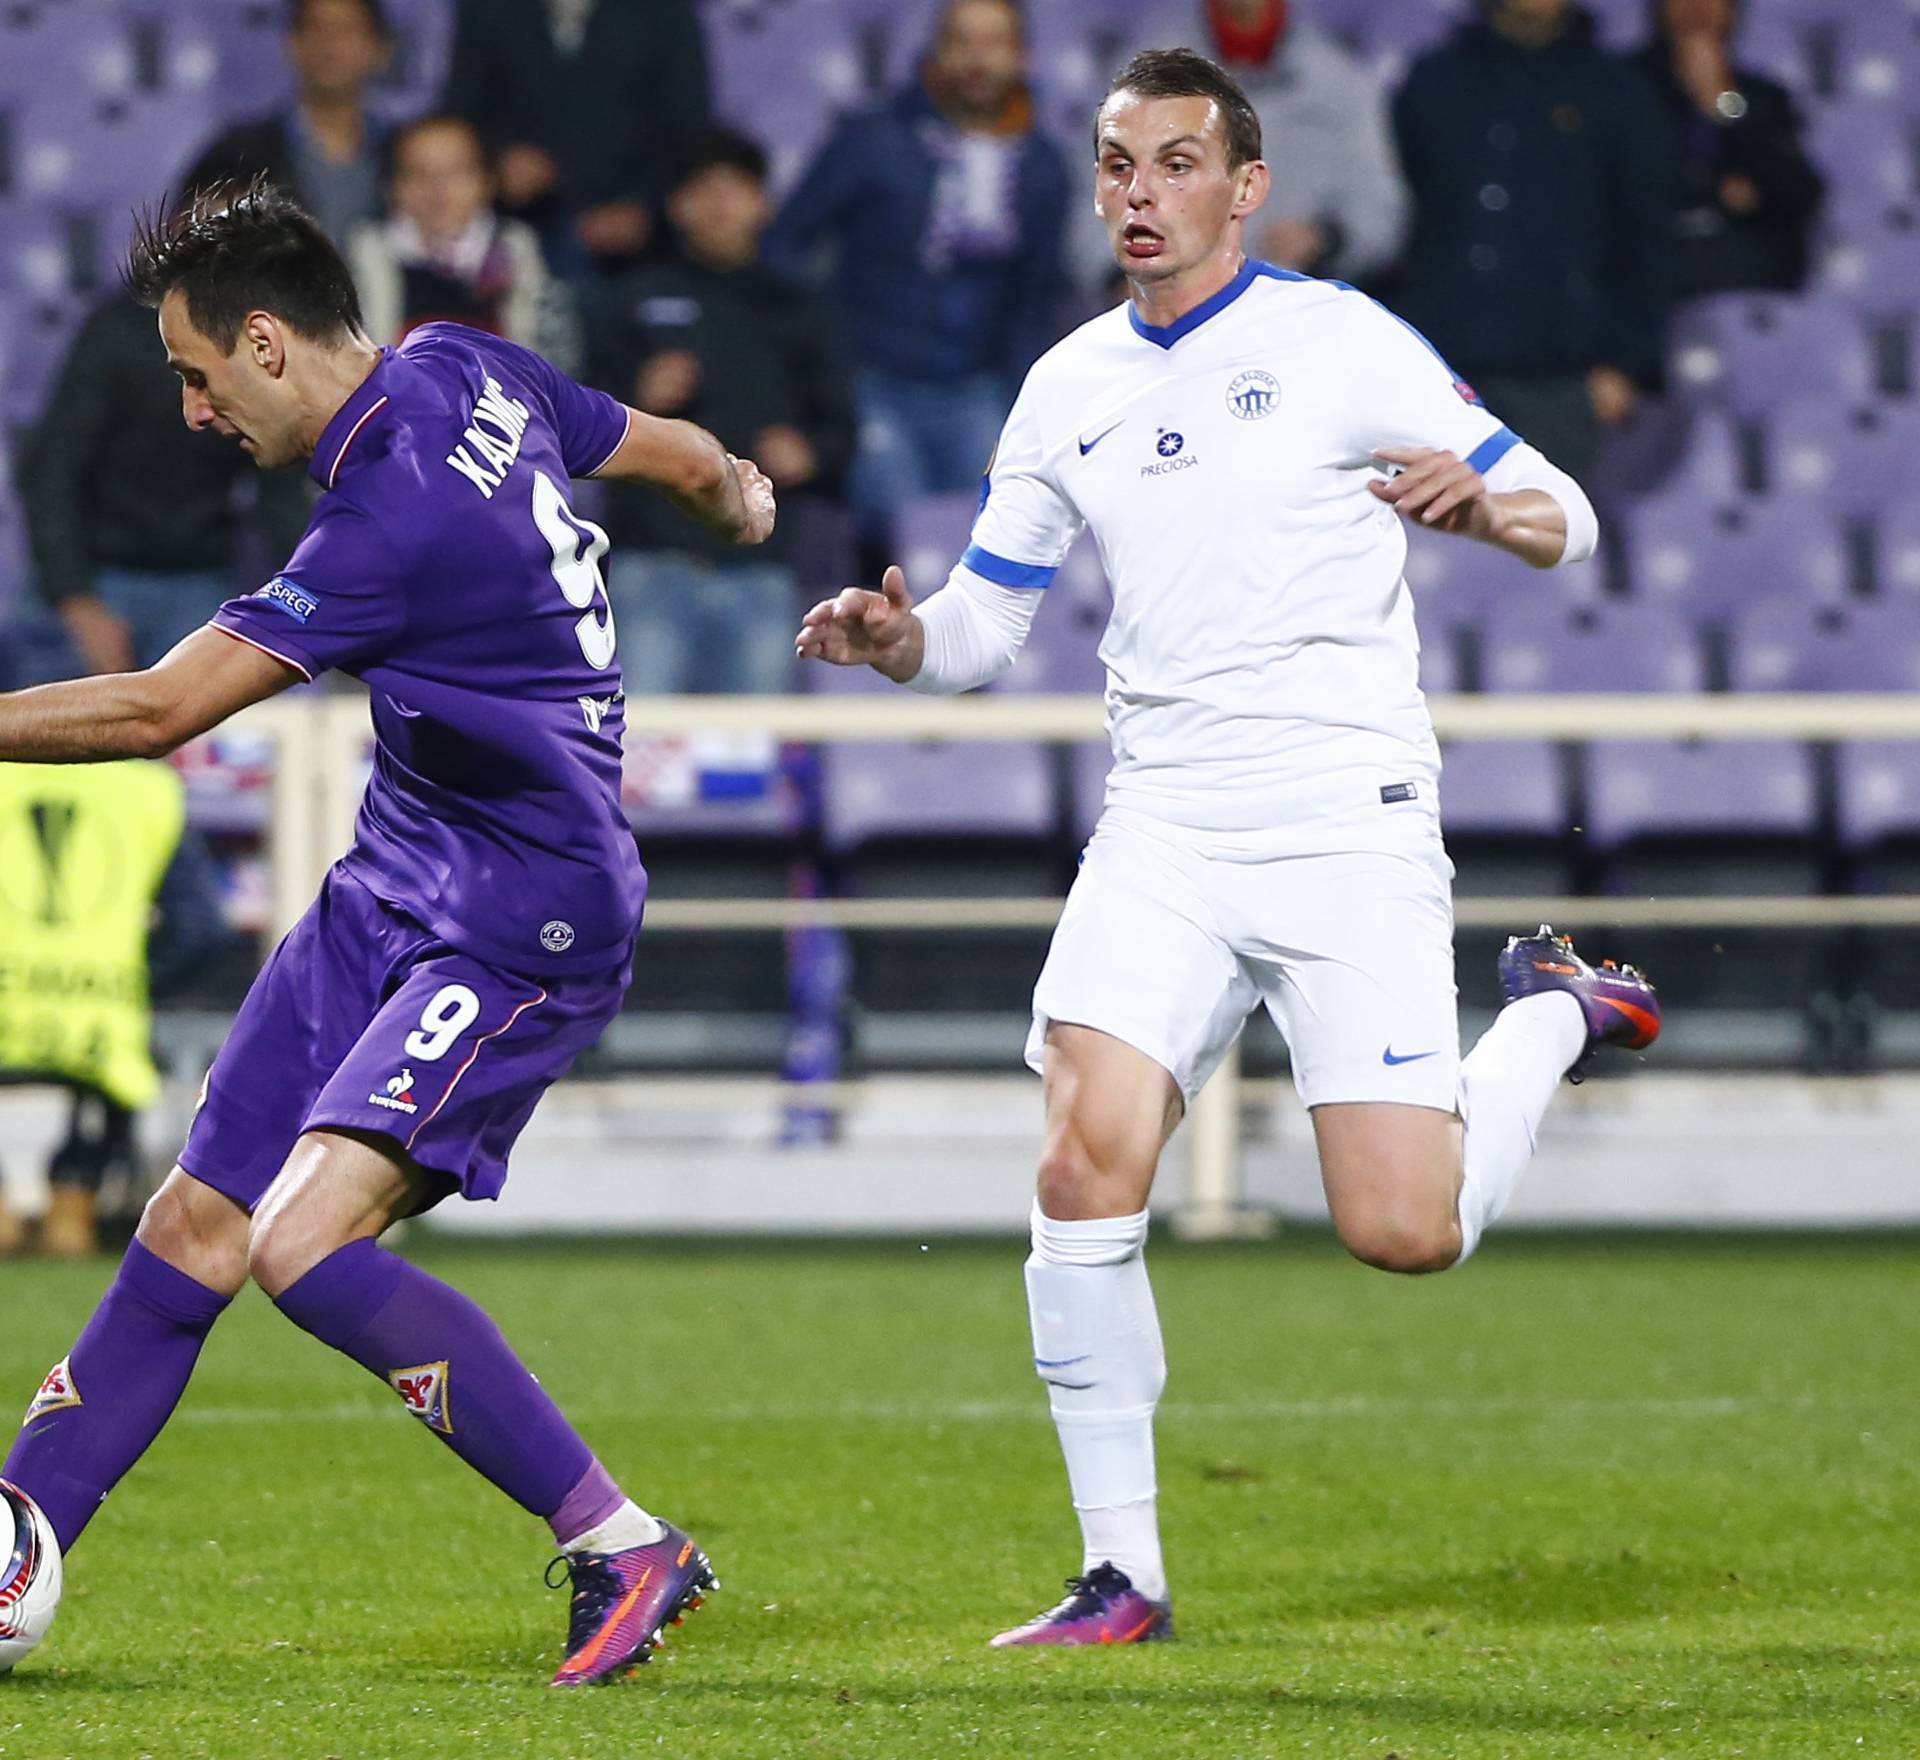 Fiorentina's Nikola Kalinic scores their second goal